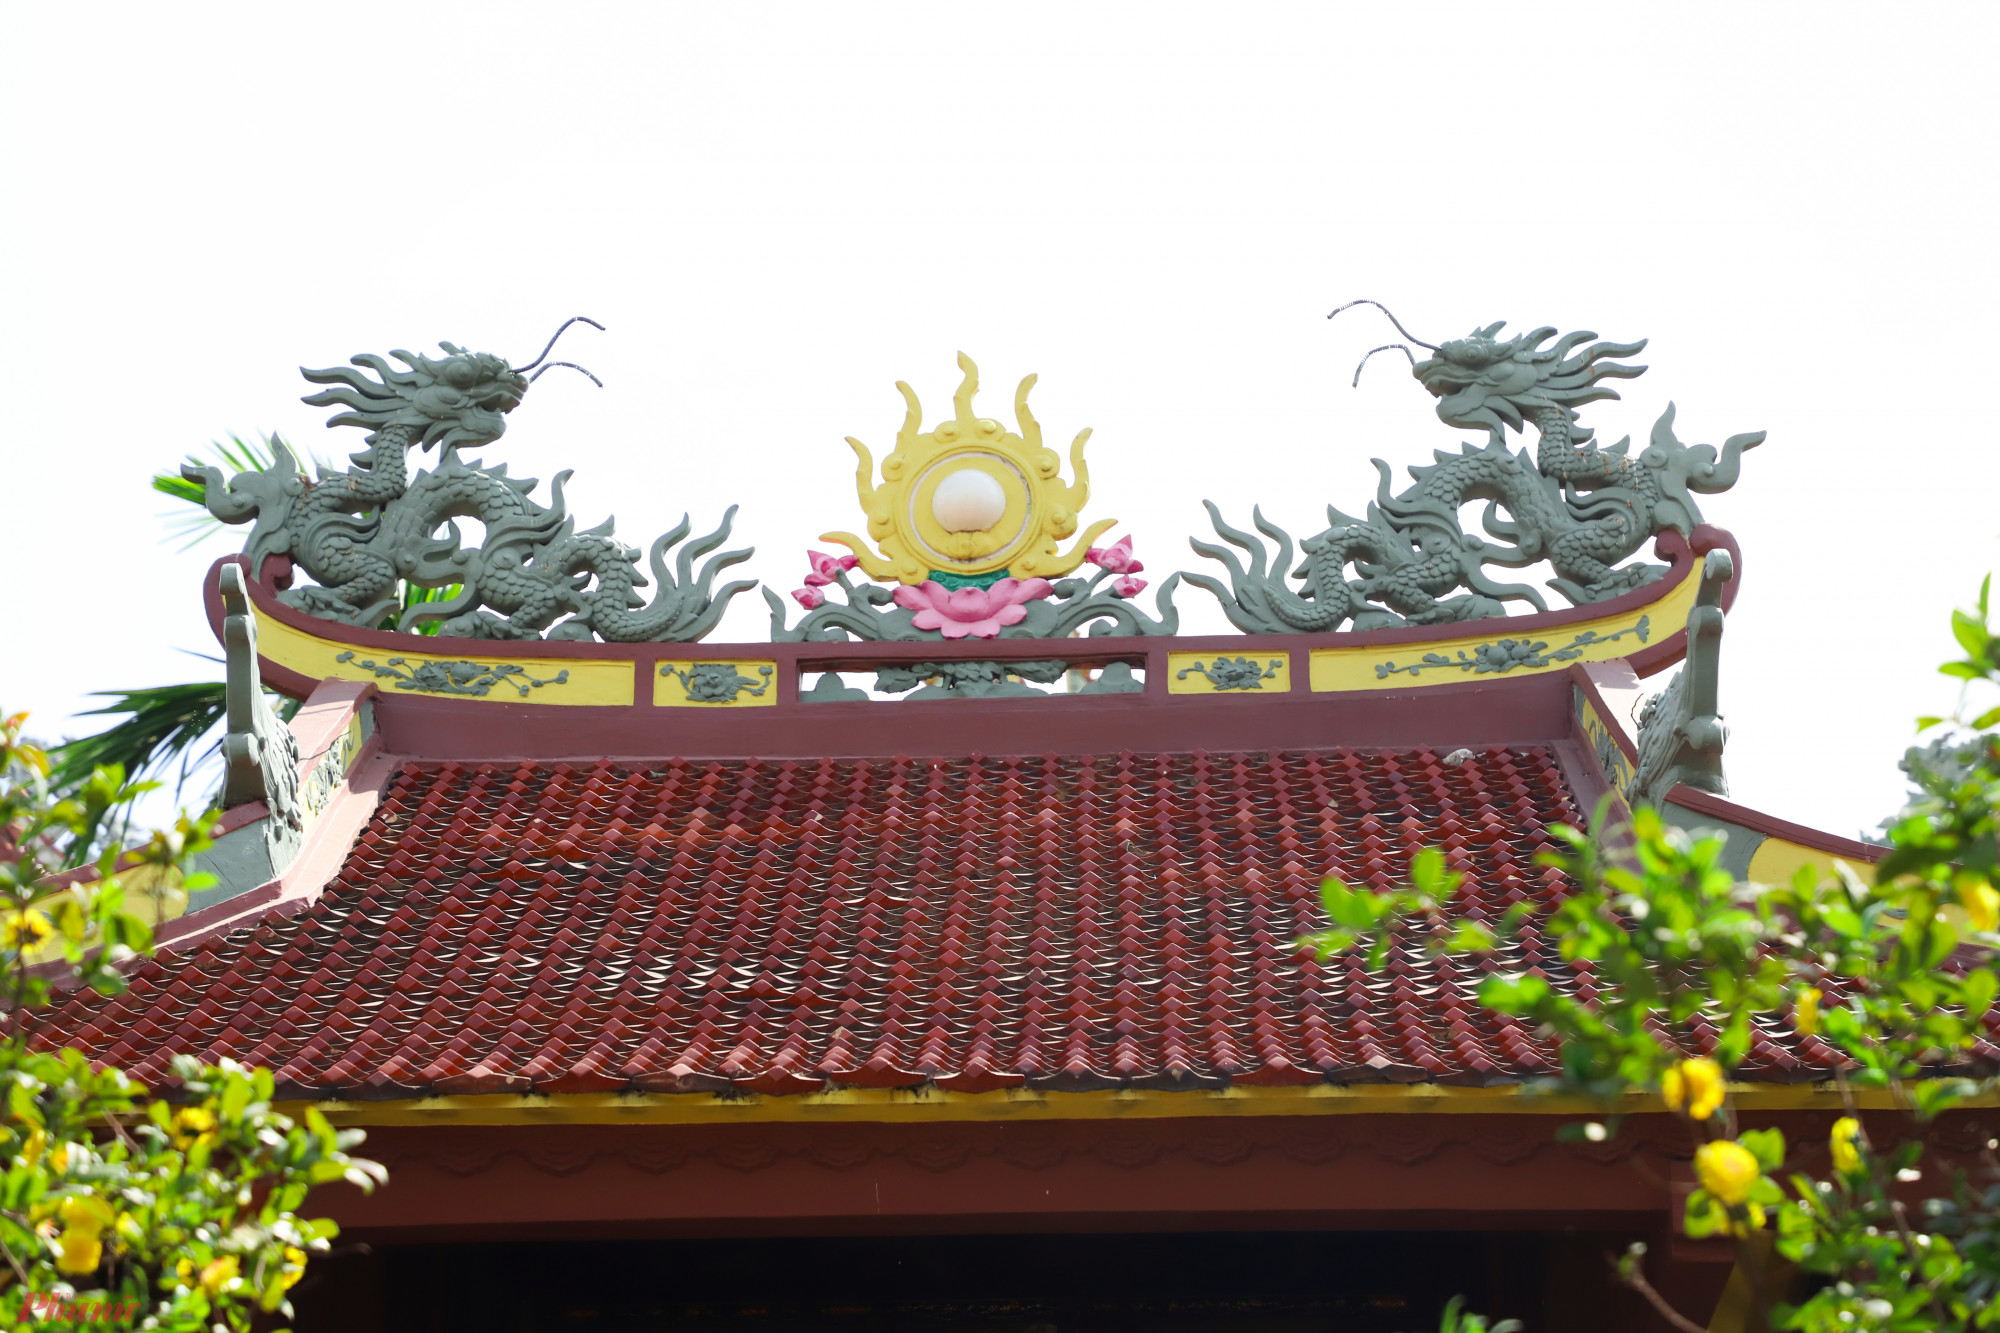 Công trình được xây dựng với tỷ lệ 1-1 so với ngôi chùa Hà Nội. Mặc dù hoàn vật liệu toàn bằng bê tông cốt thép nhưng cấu trúc và chi tiết trang trí vẫn rất tinh tế như nguyên bản.